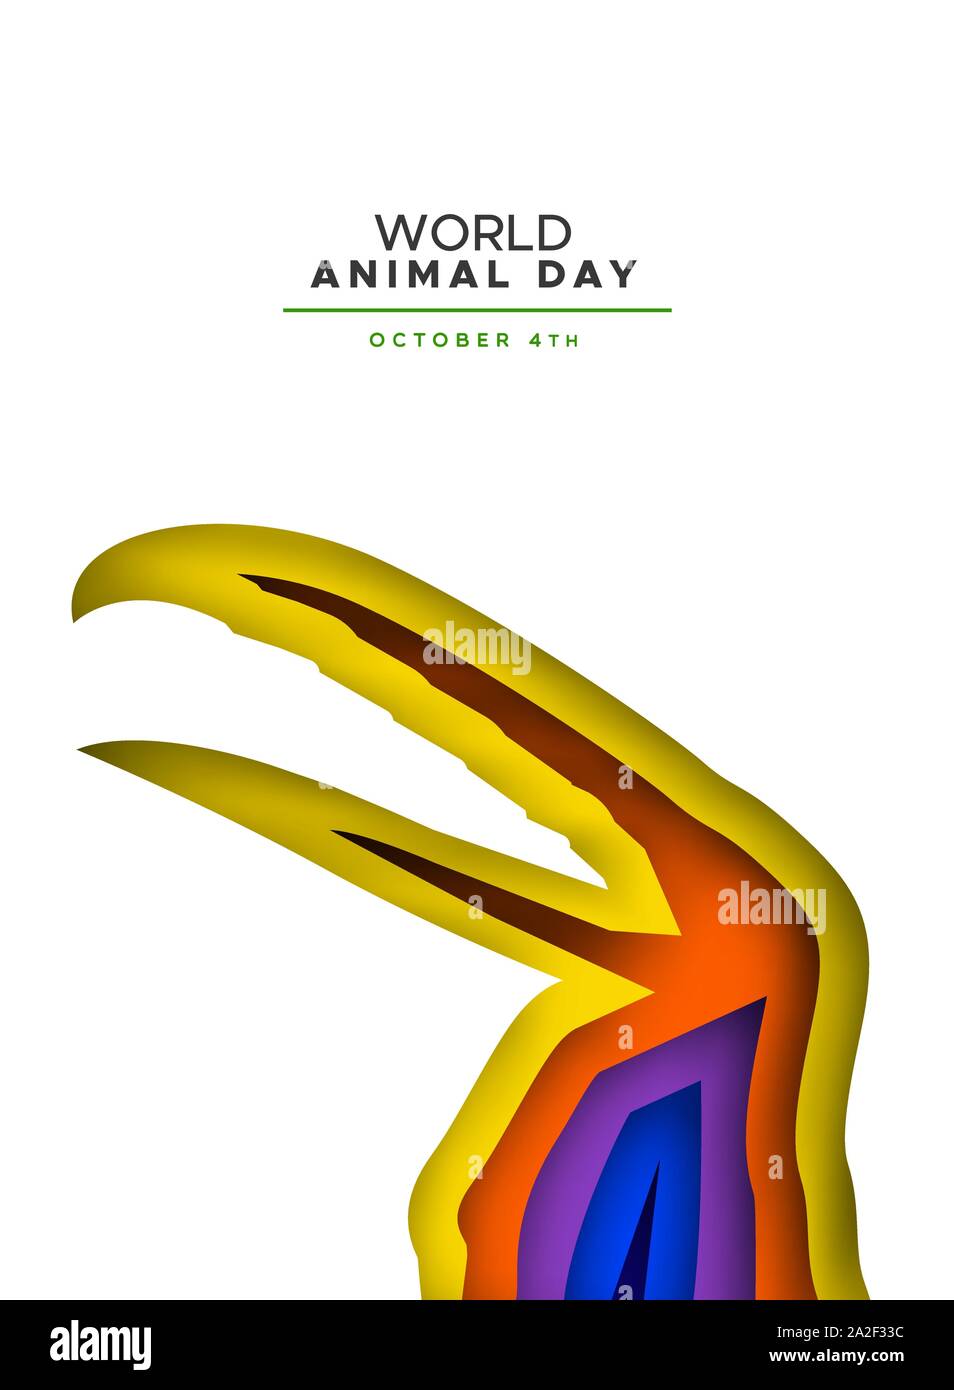 Welt Tier Tag papercut Abbildung: bunte Layered toucan Vogel Ausschnitt. Gefährdete Arten Erhaltung Konzept, Schutz von Wildtieren Urlaub de Stock Vektor